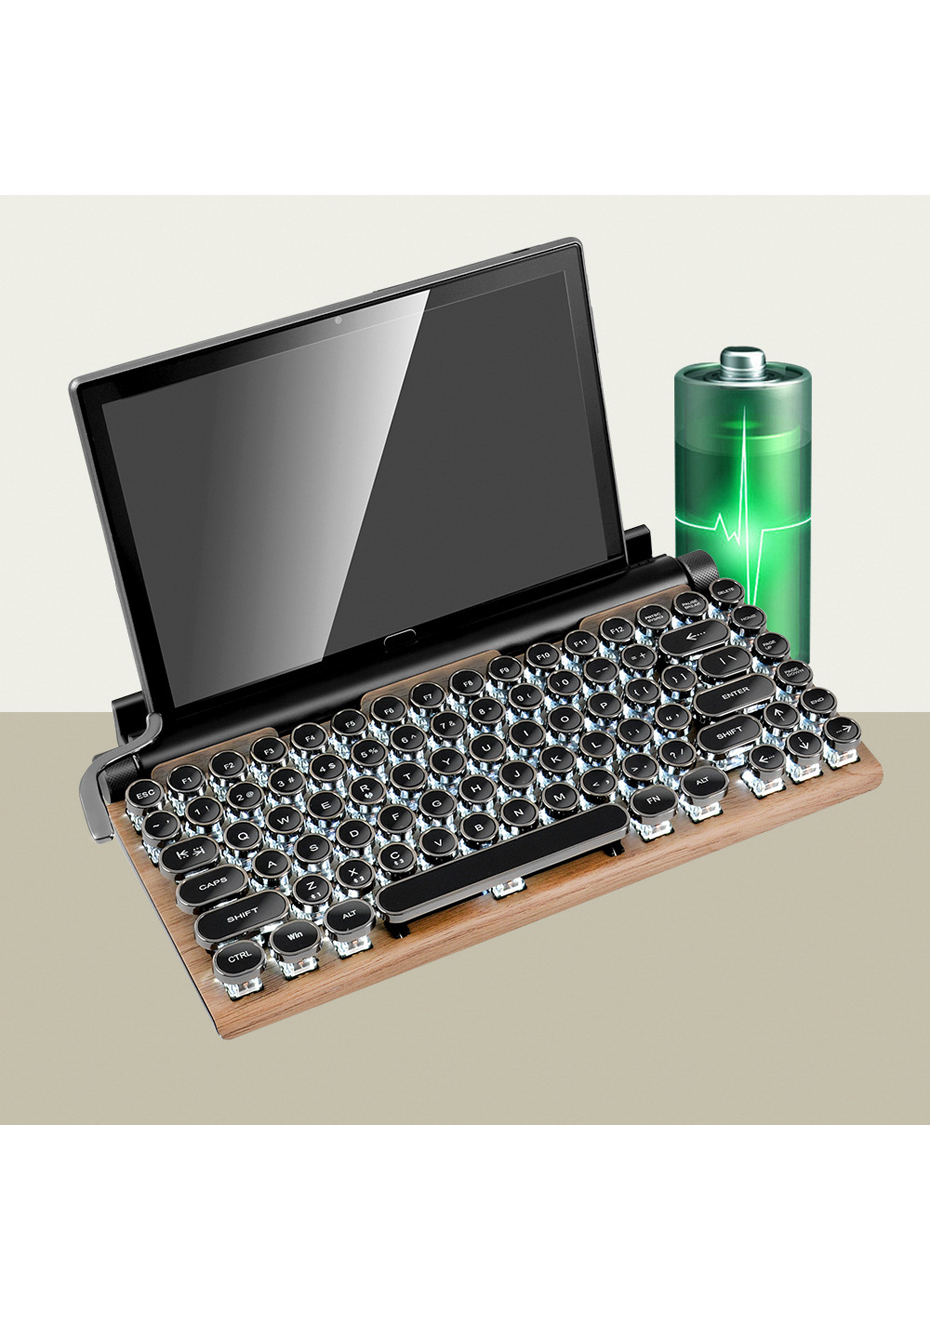 mechanical typewriter keyboard bluetooth